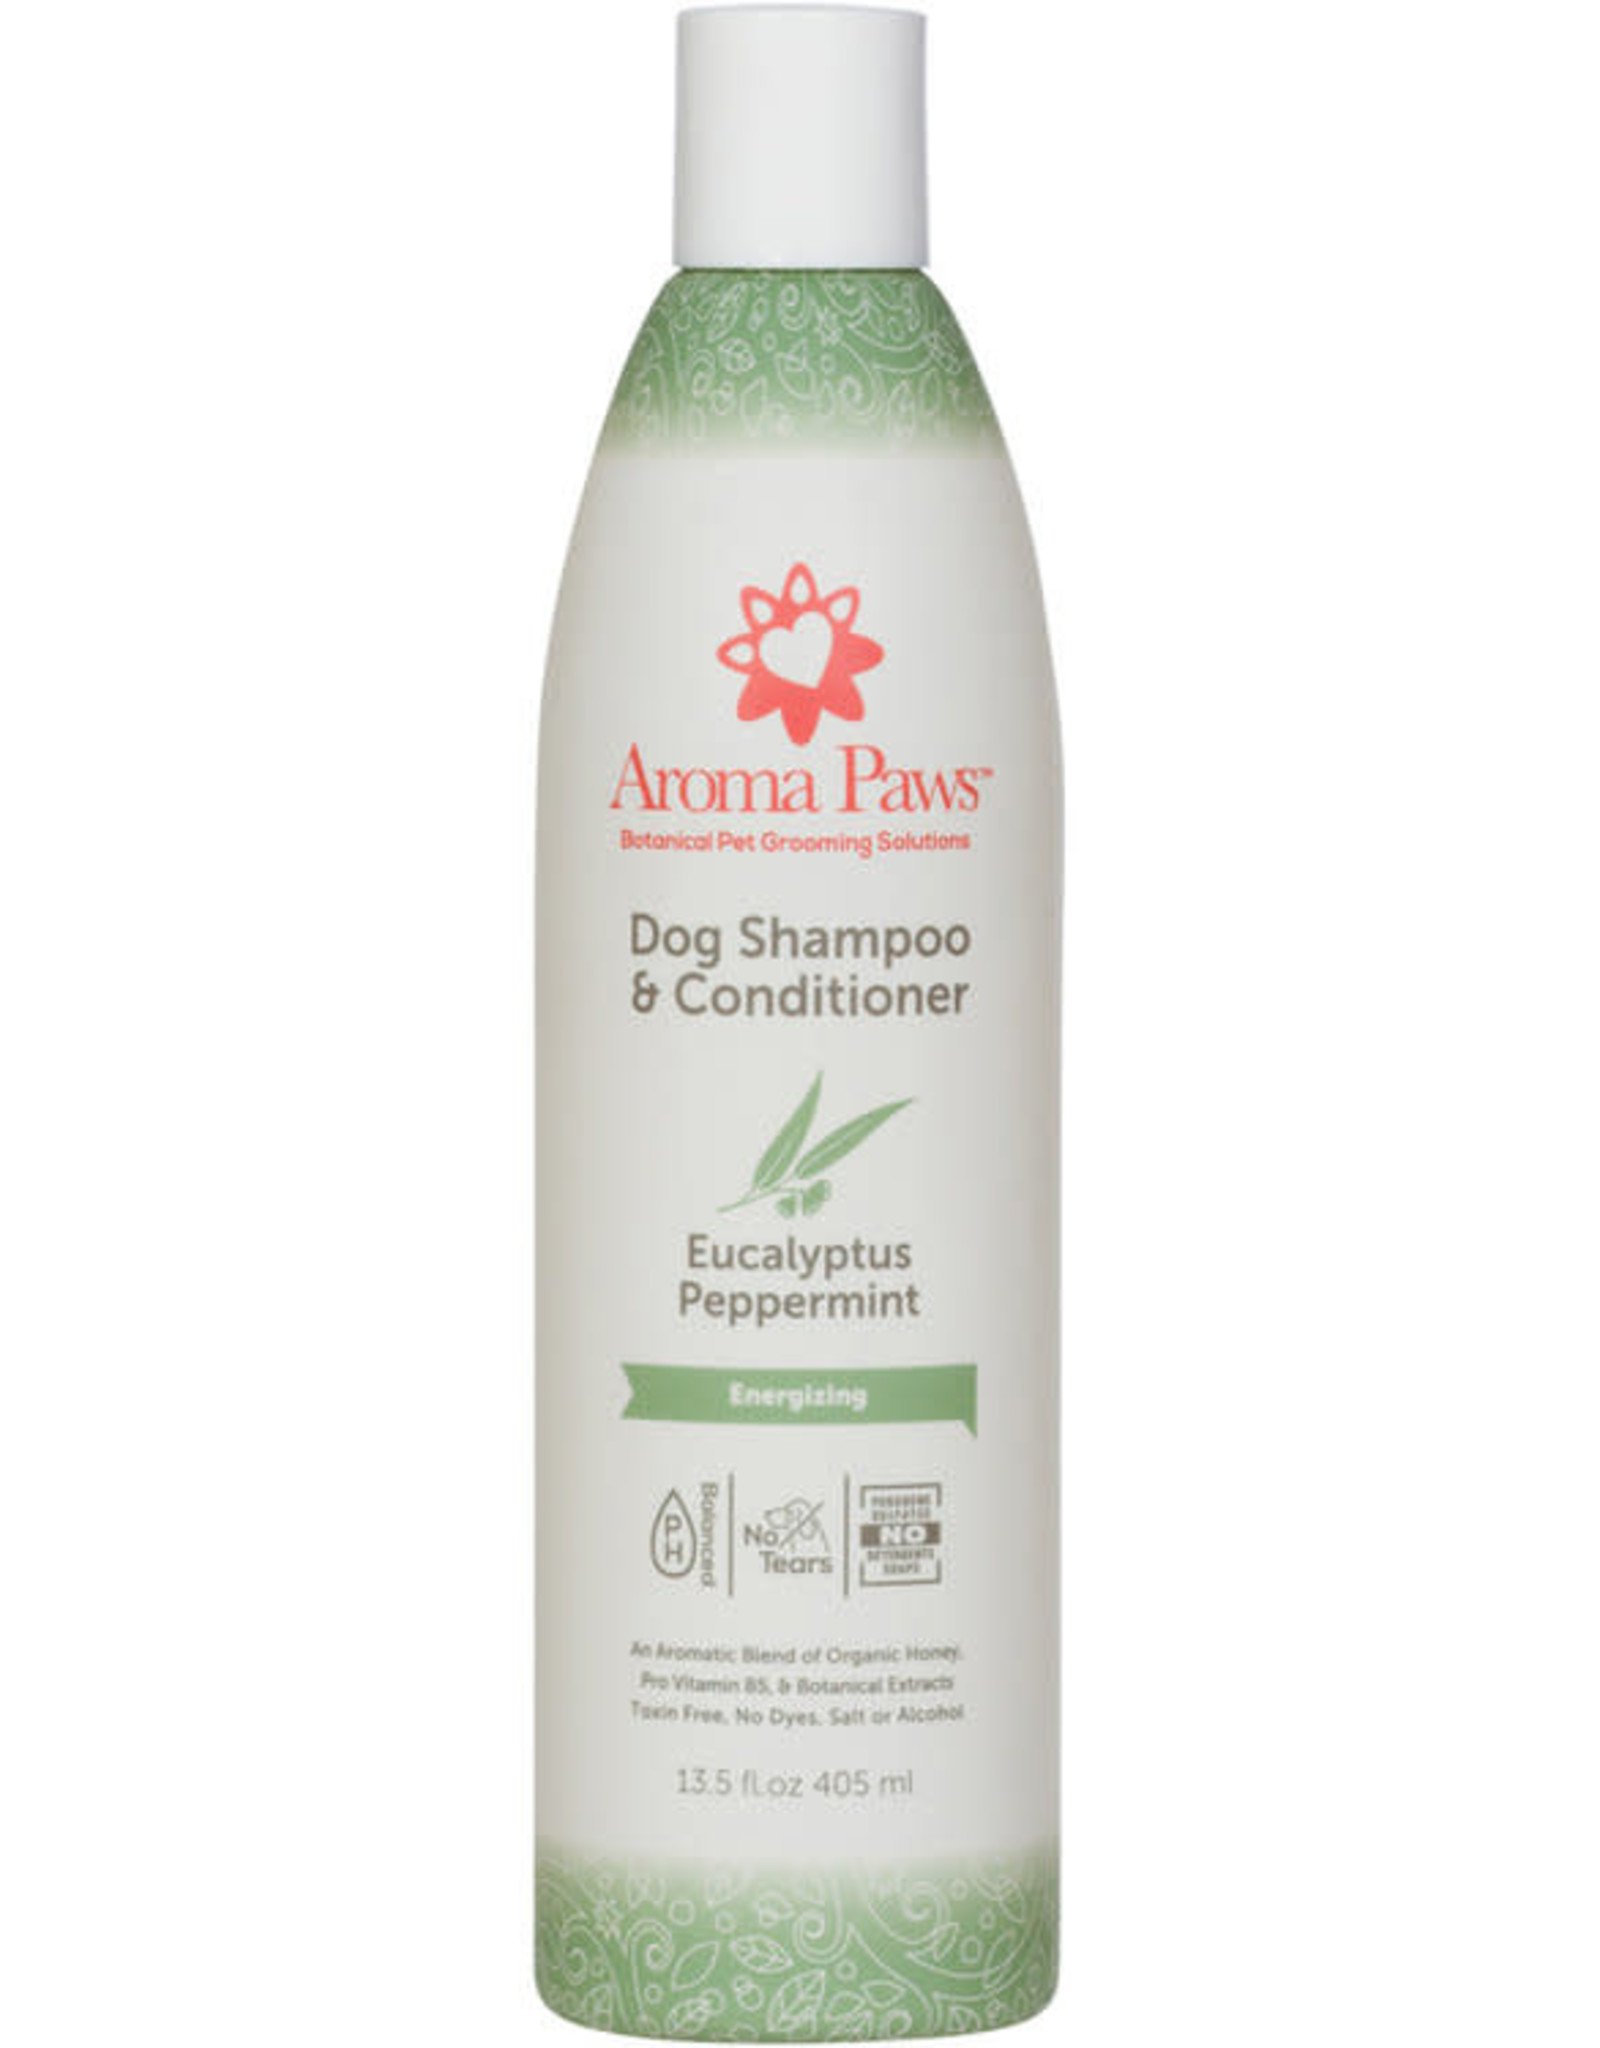 Aroma Paws Eucalyptus Peppermint Shampoo & Conditioner